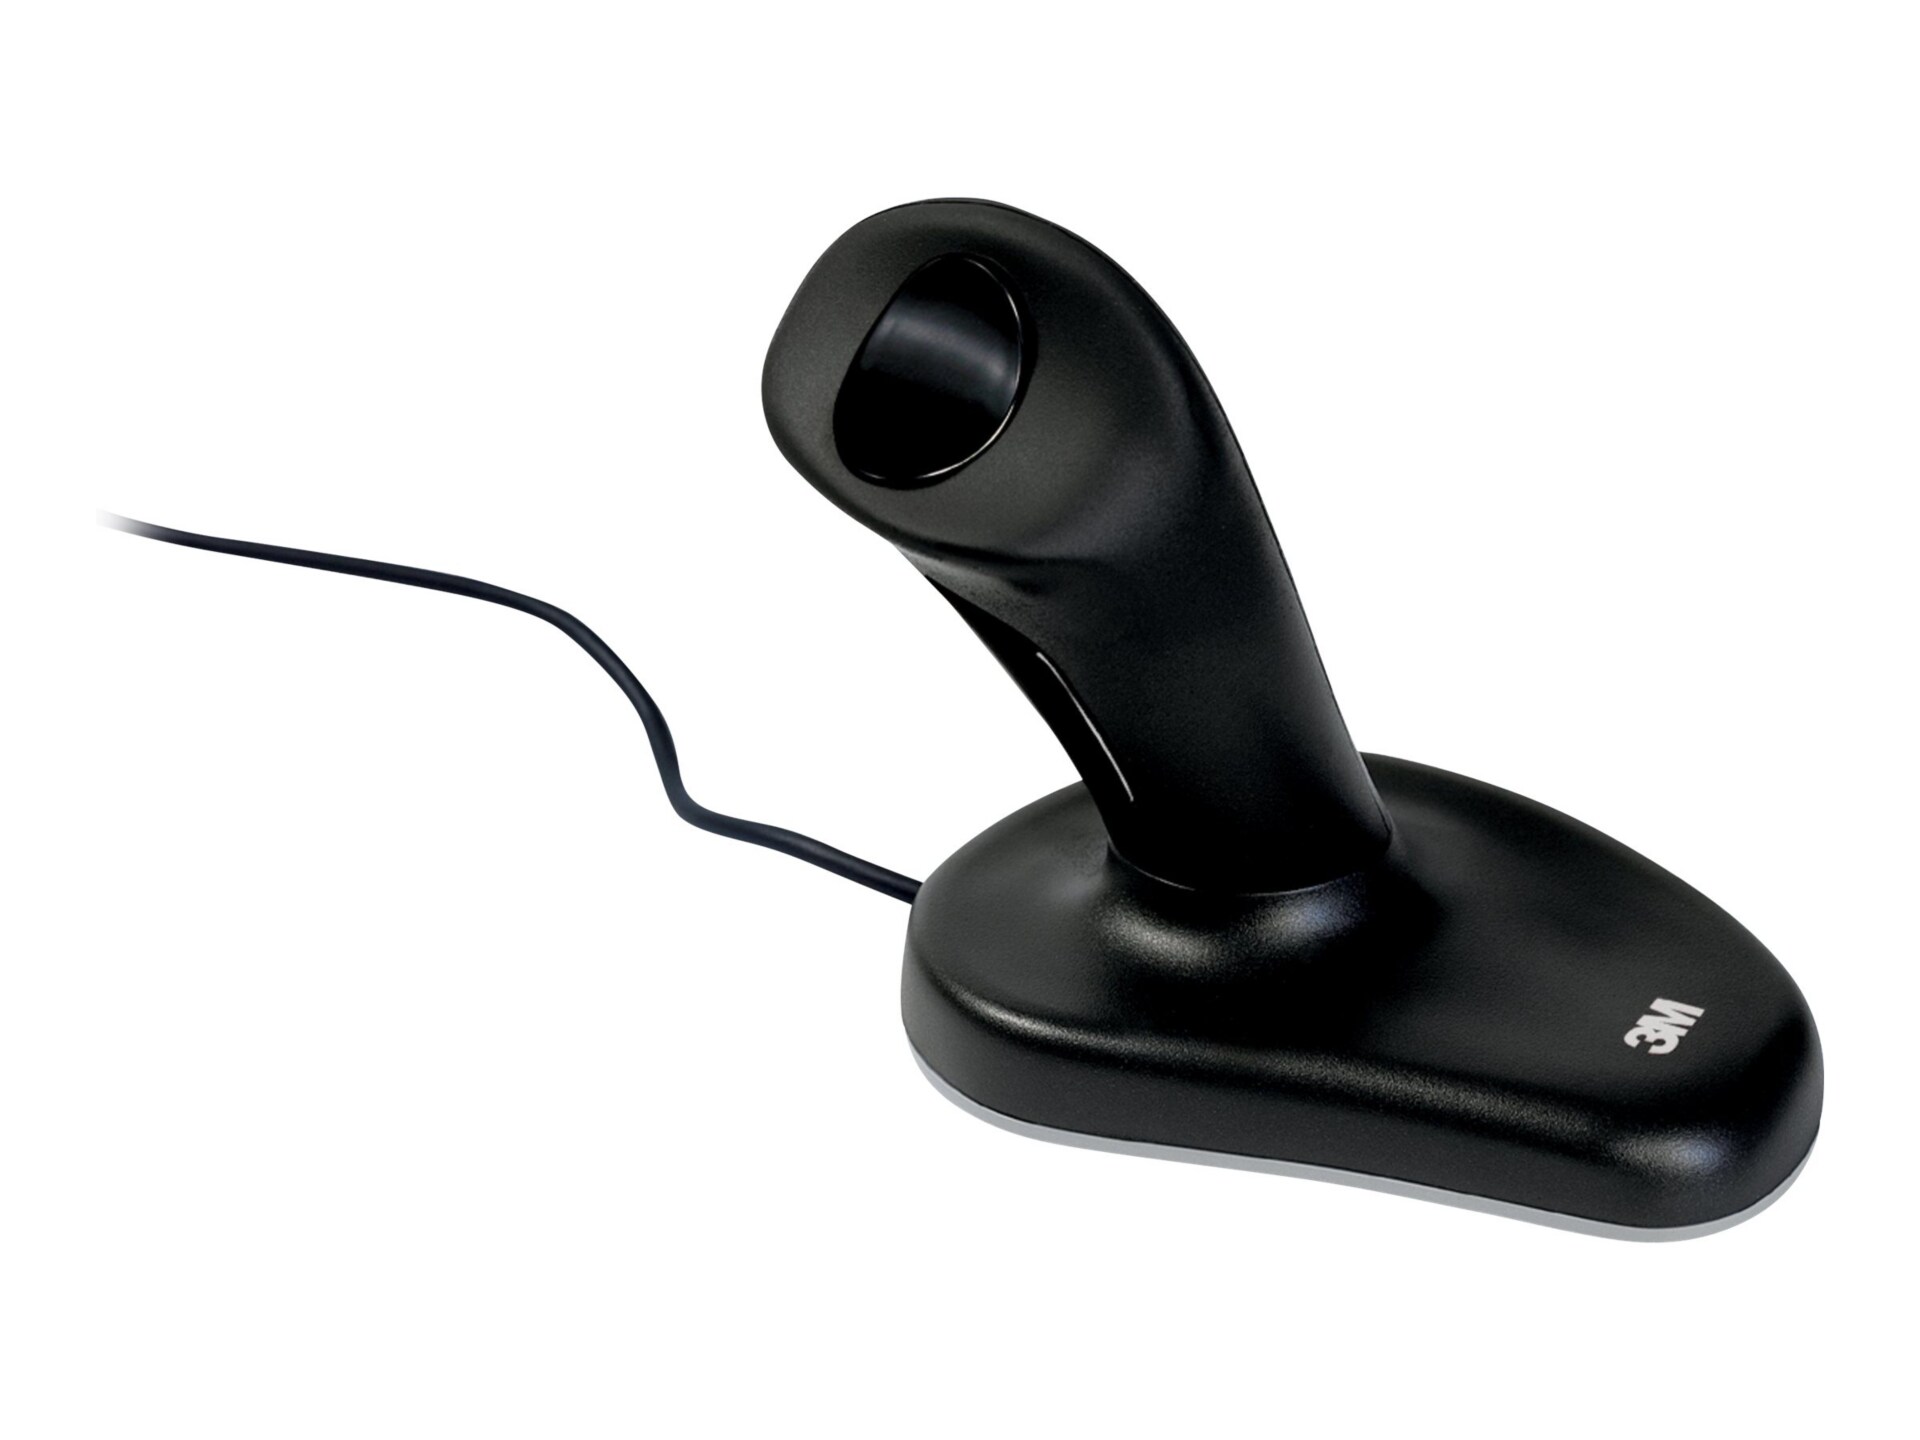 3M Ergonomic Mouse EM500GPL Large - mouse - PS/2, USB - black